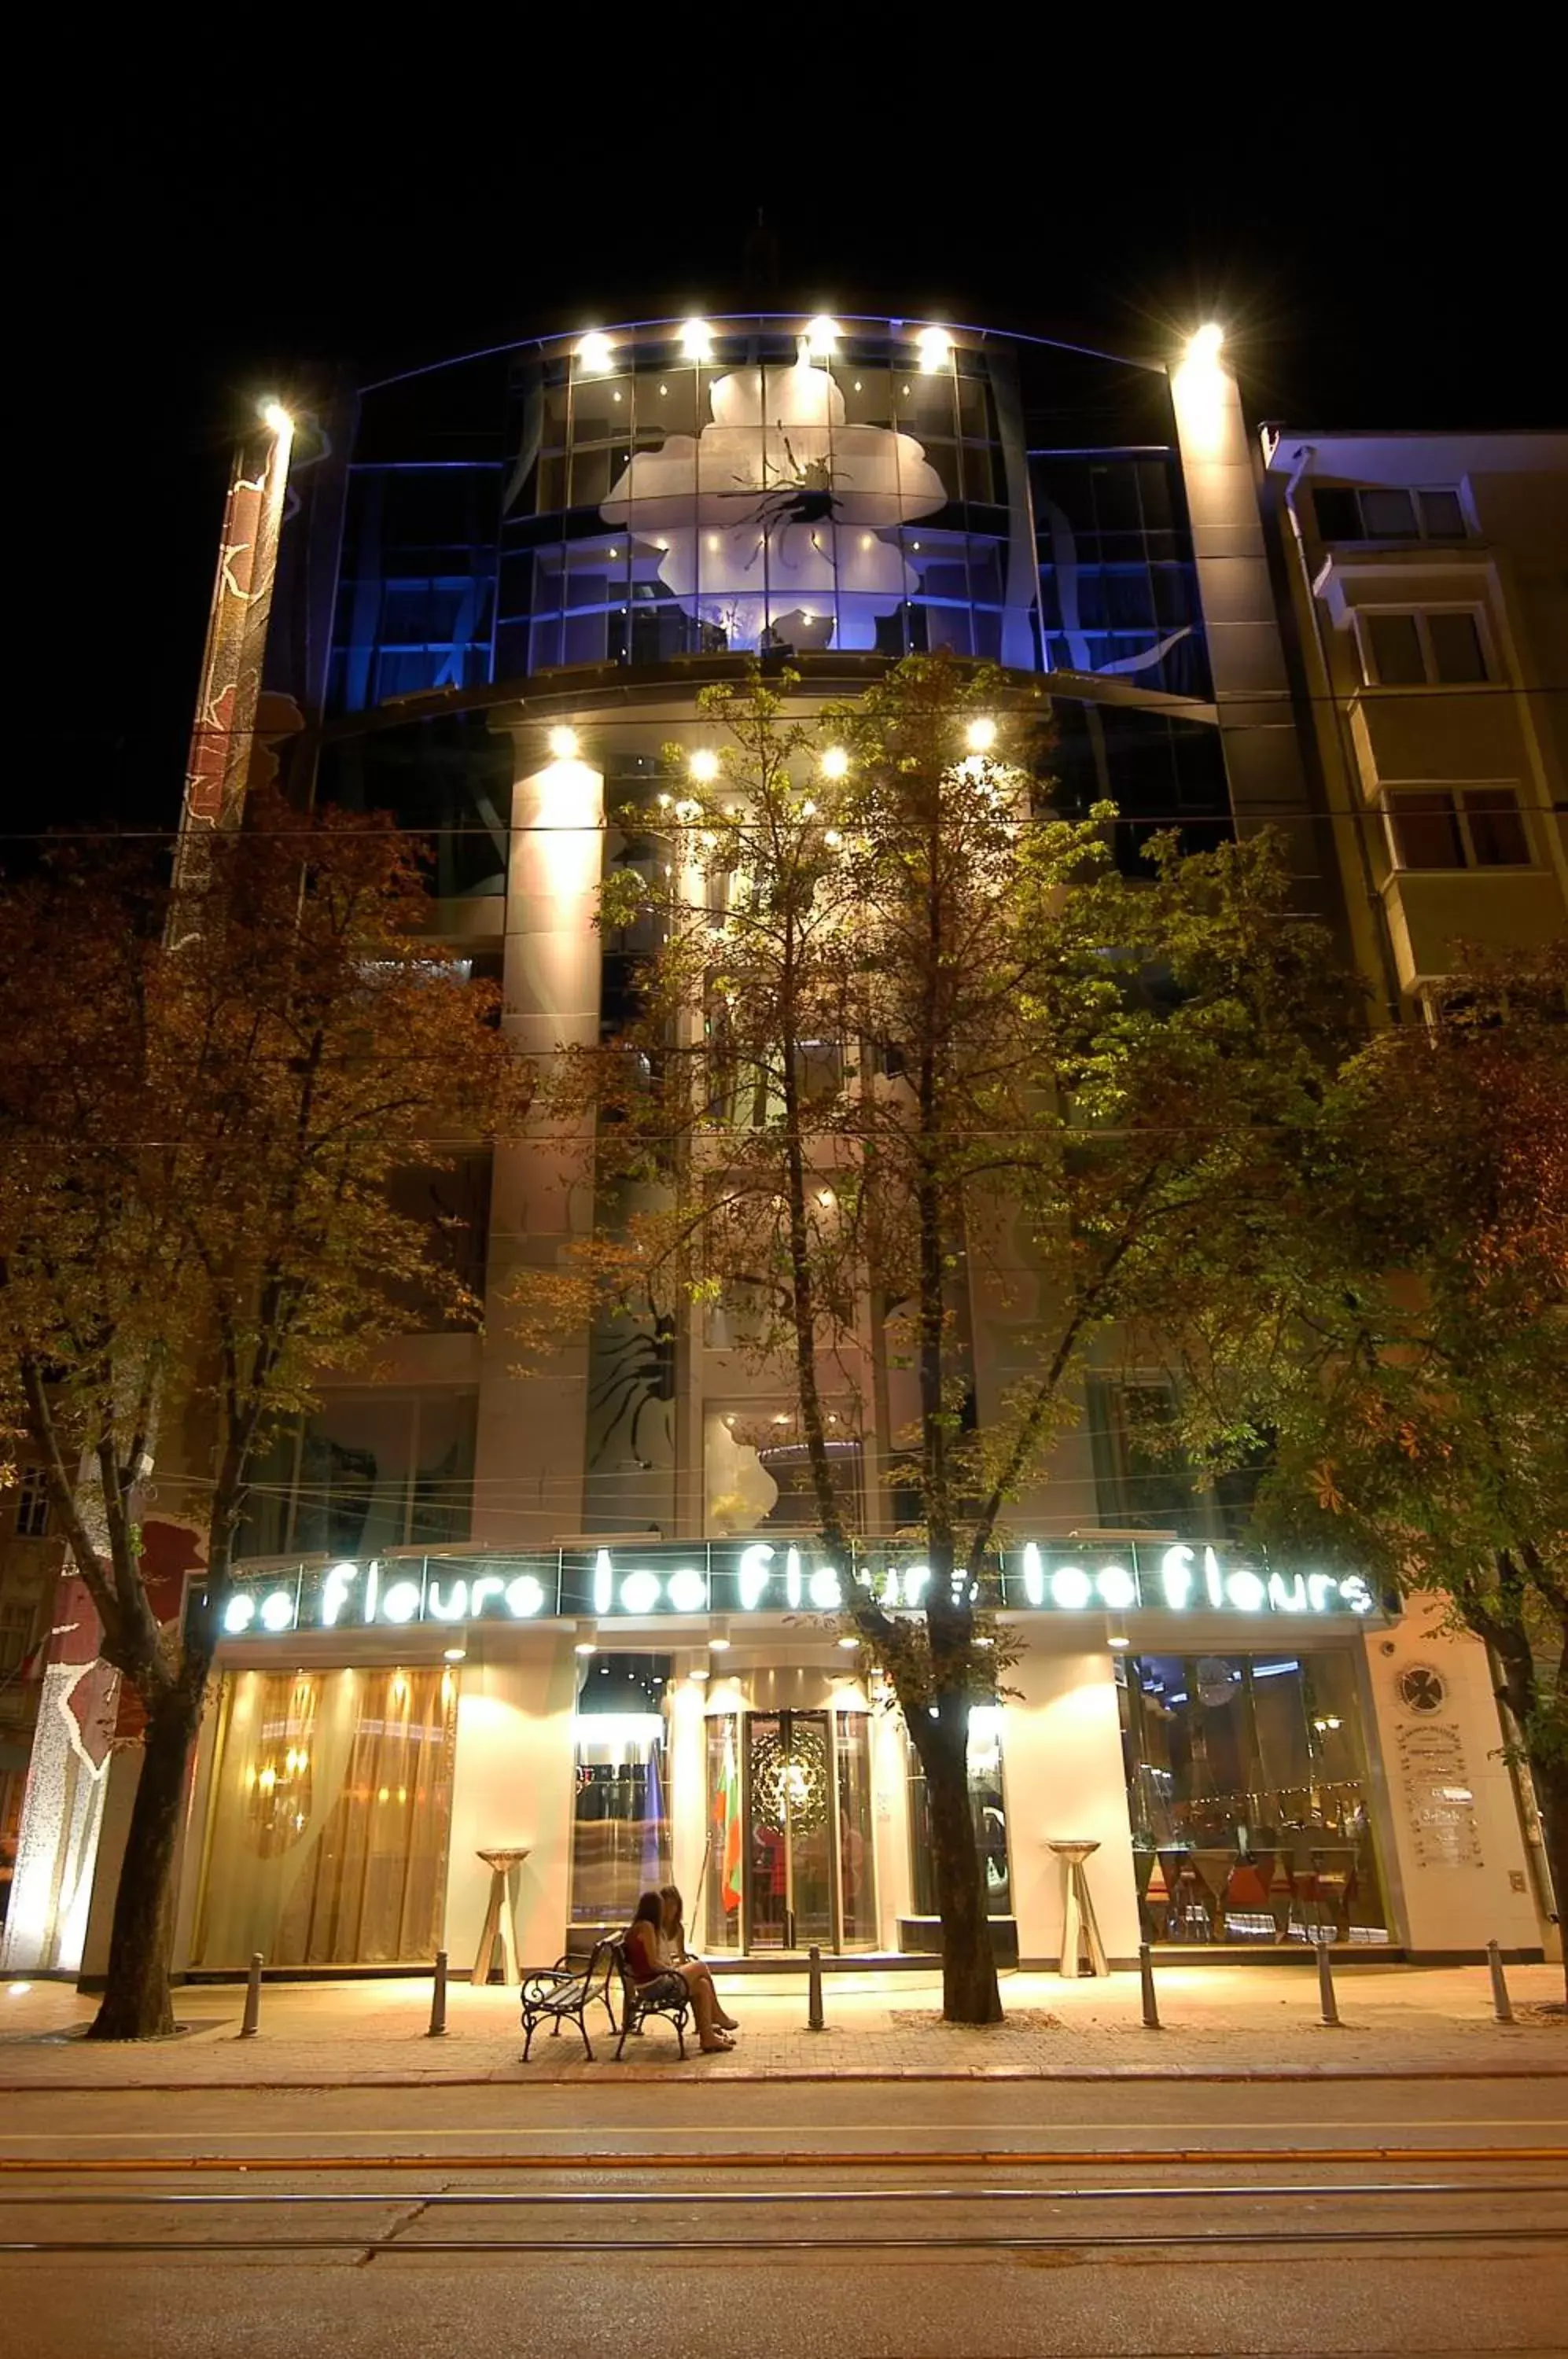 Property Building in Les Fleurs Boutique Hotel